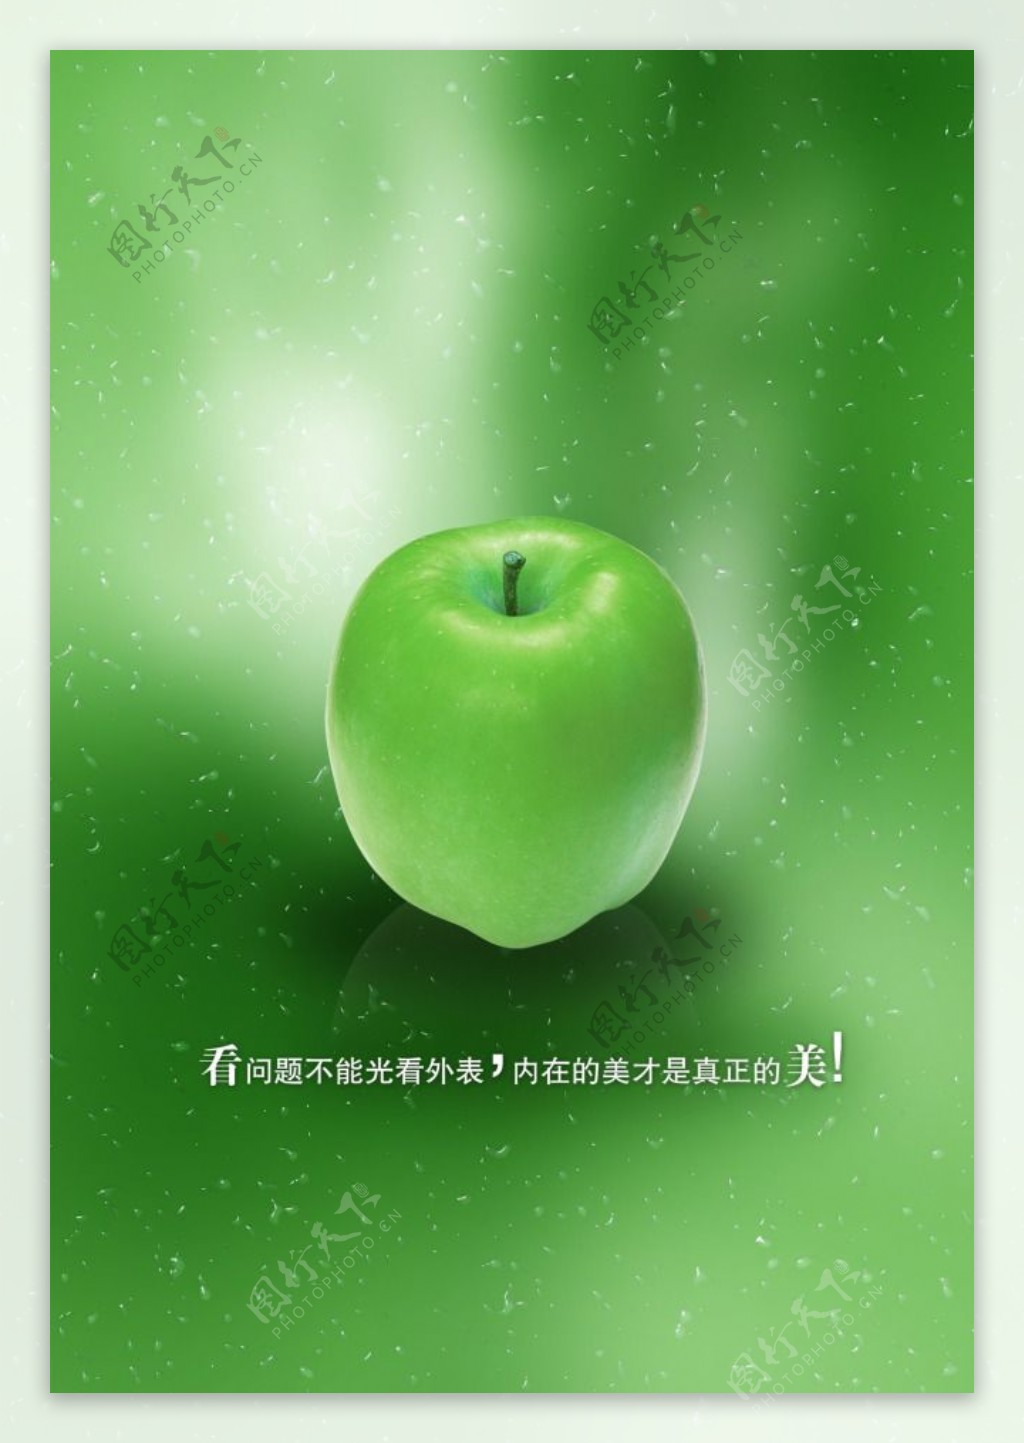 文化展板设计青苹果